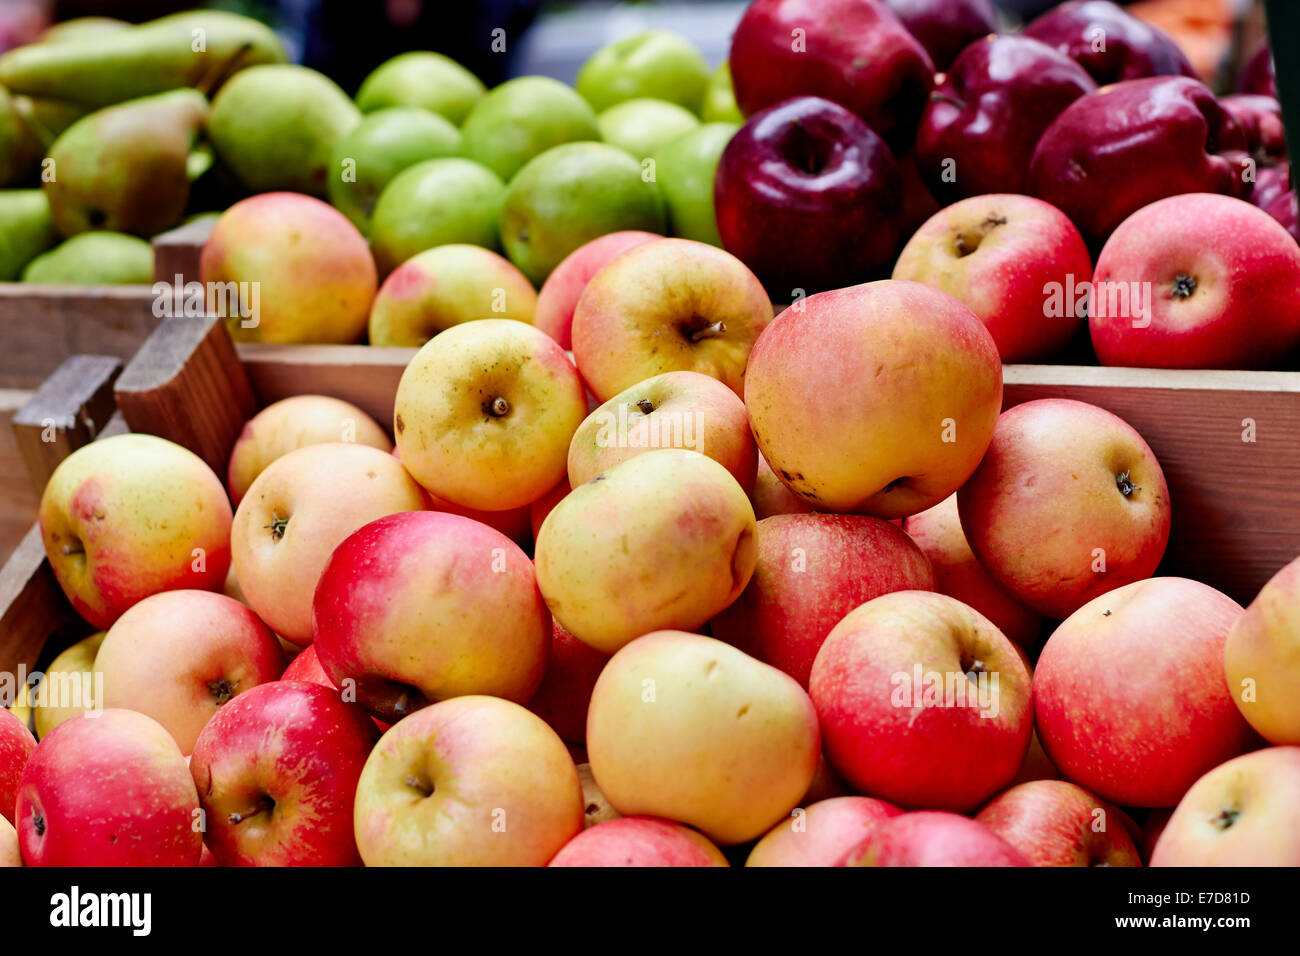 Яблоки купить рынок. Яблоки на рынке. Яблоки на базаре. Урожай яблок. Яблоки на прилавке.